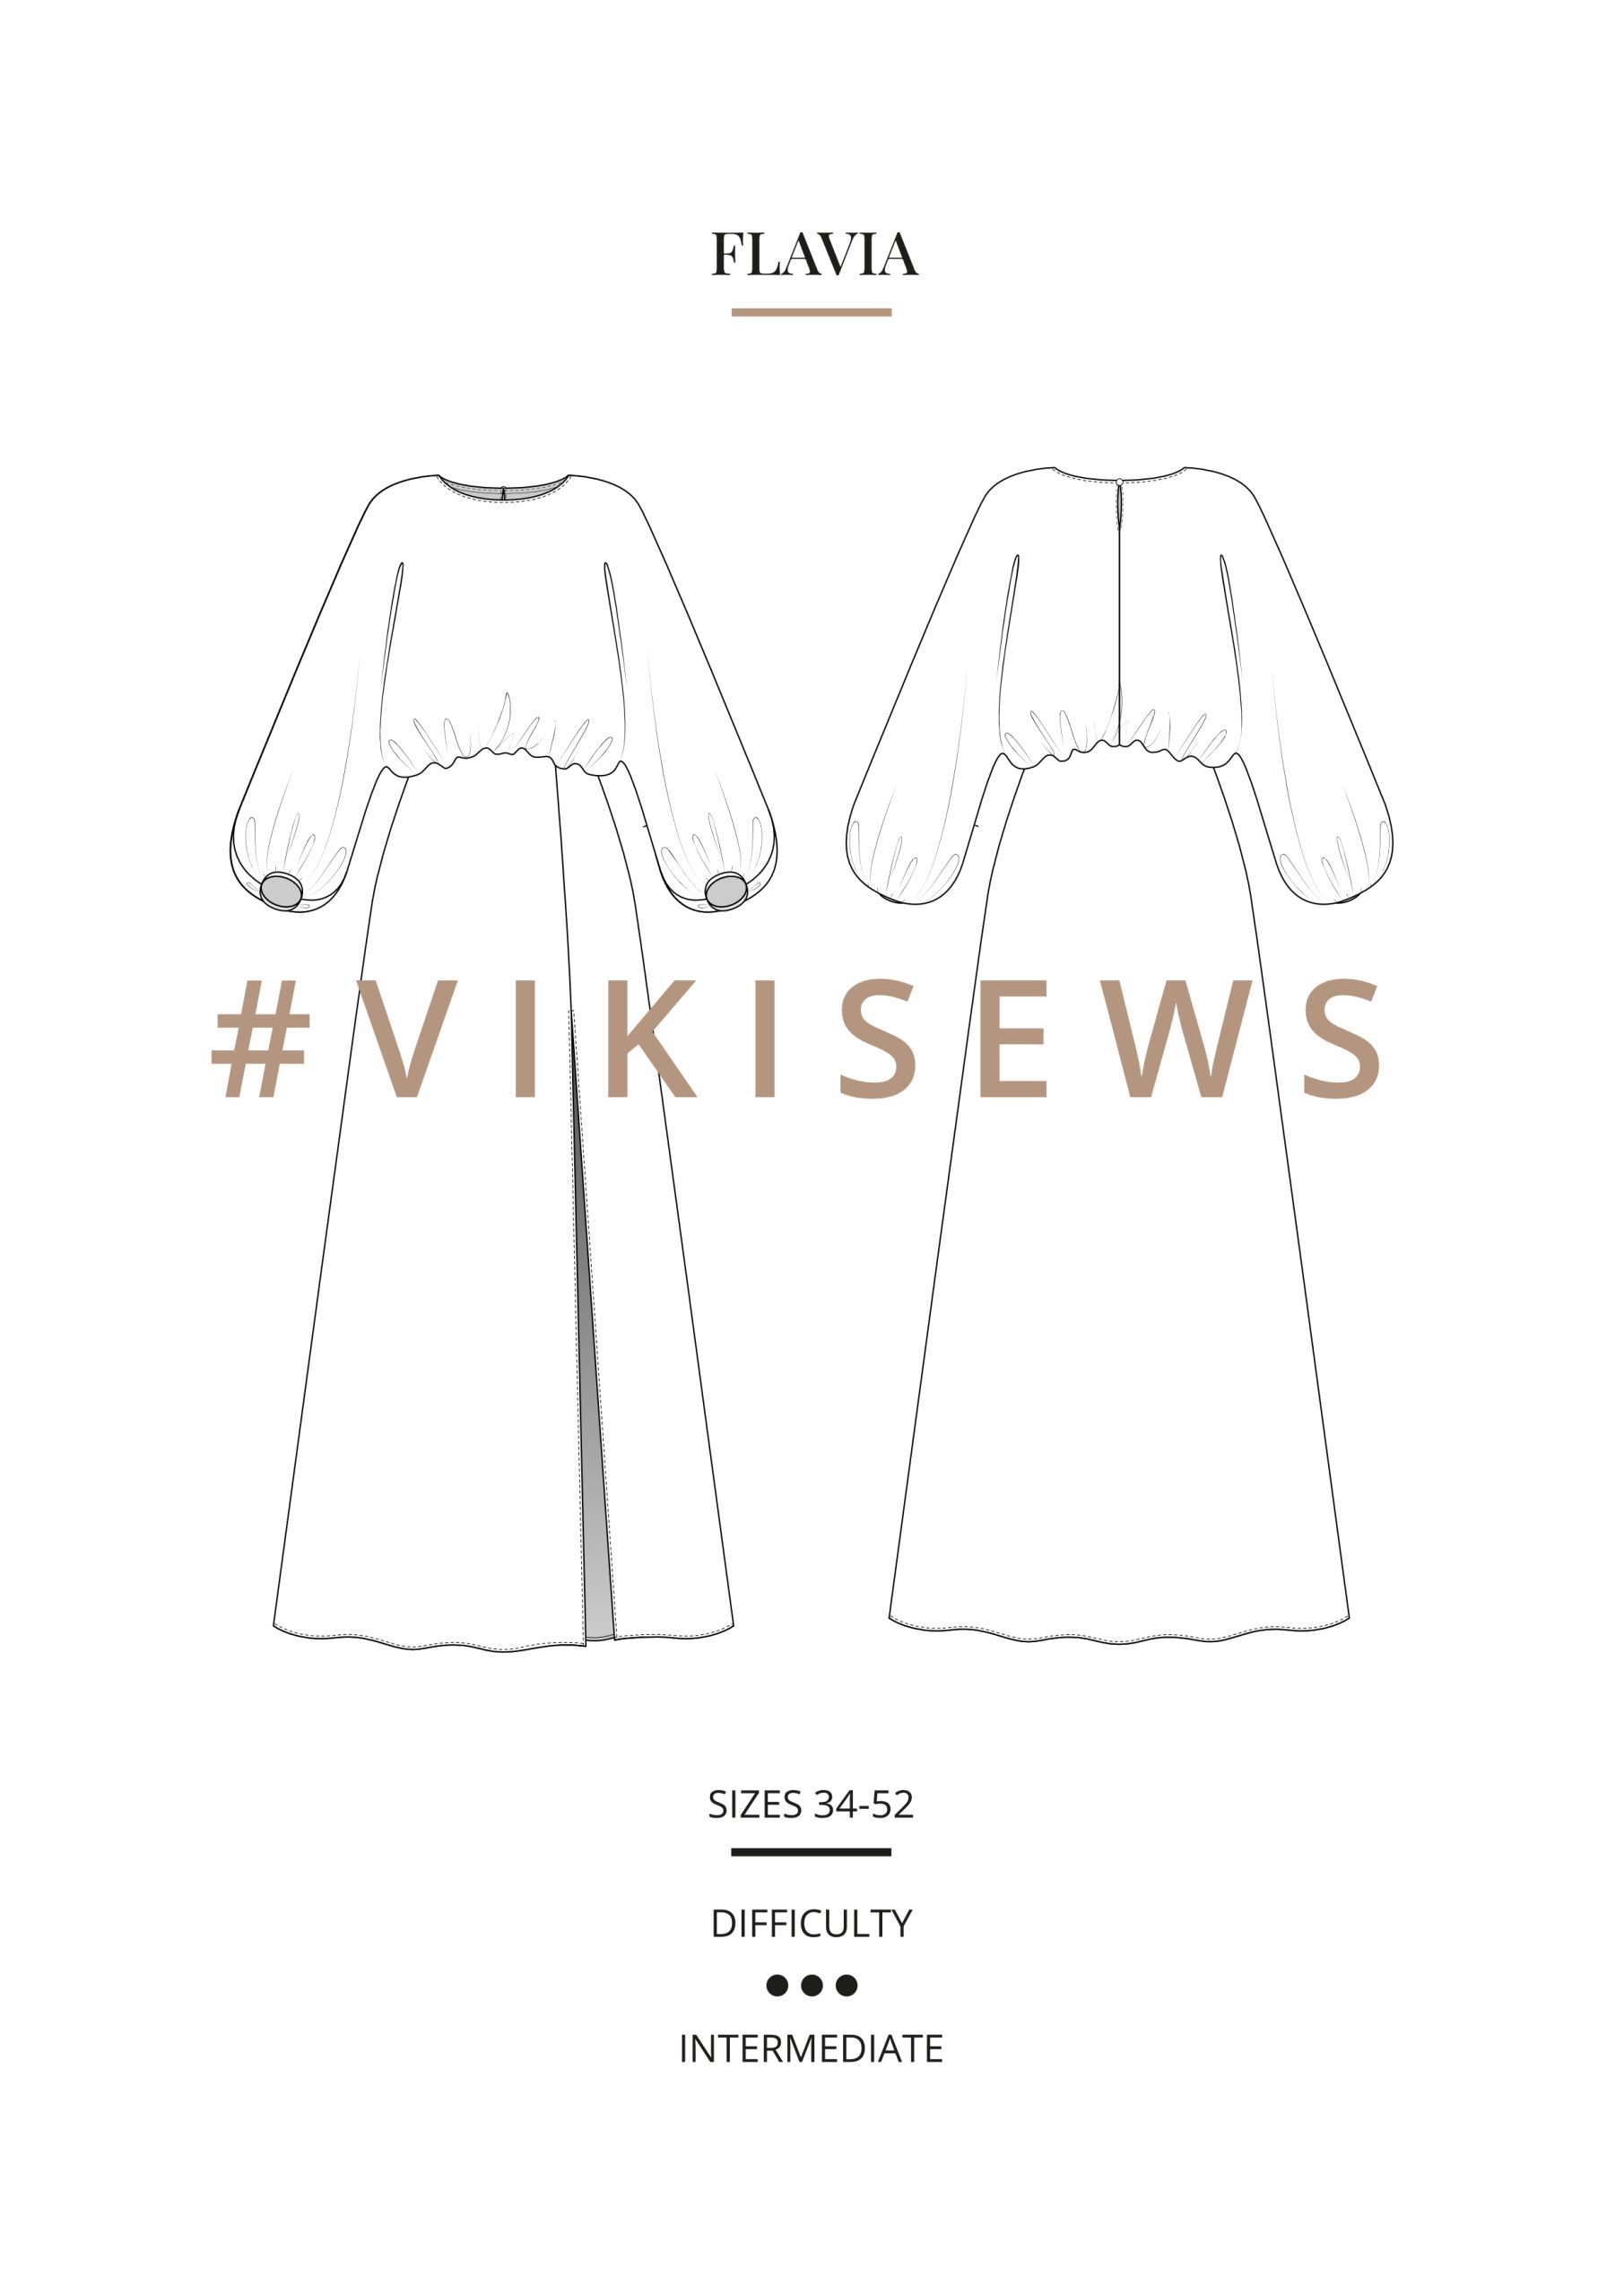 Vikisews Flavia Dress PDF